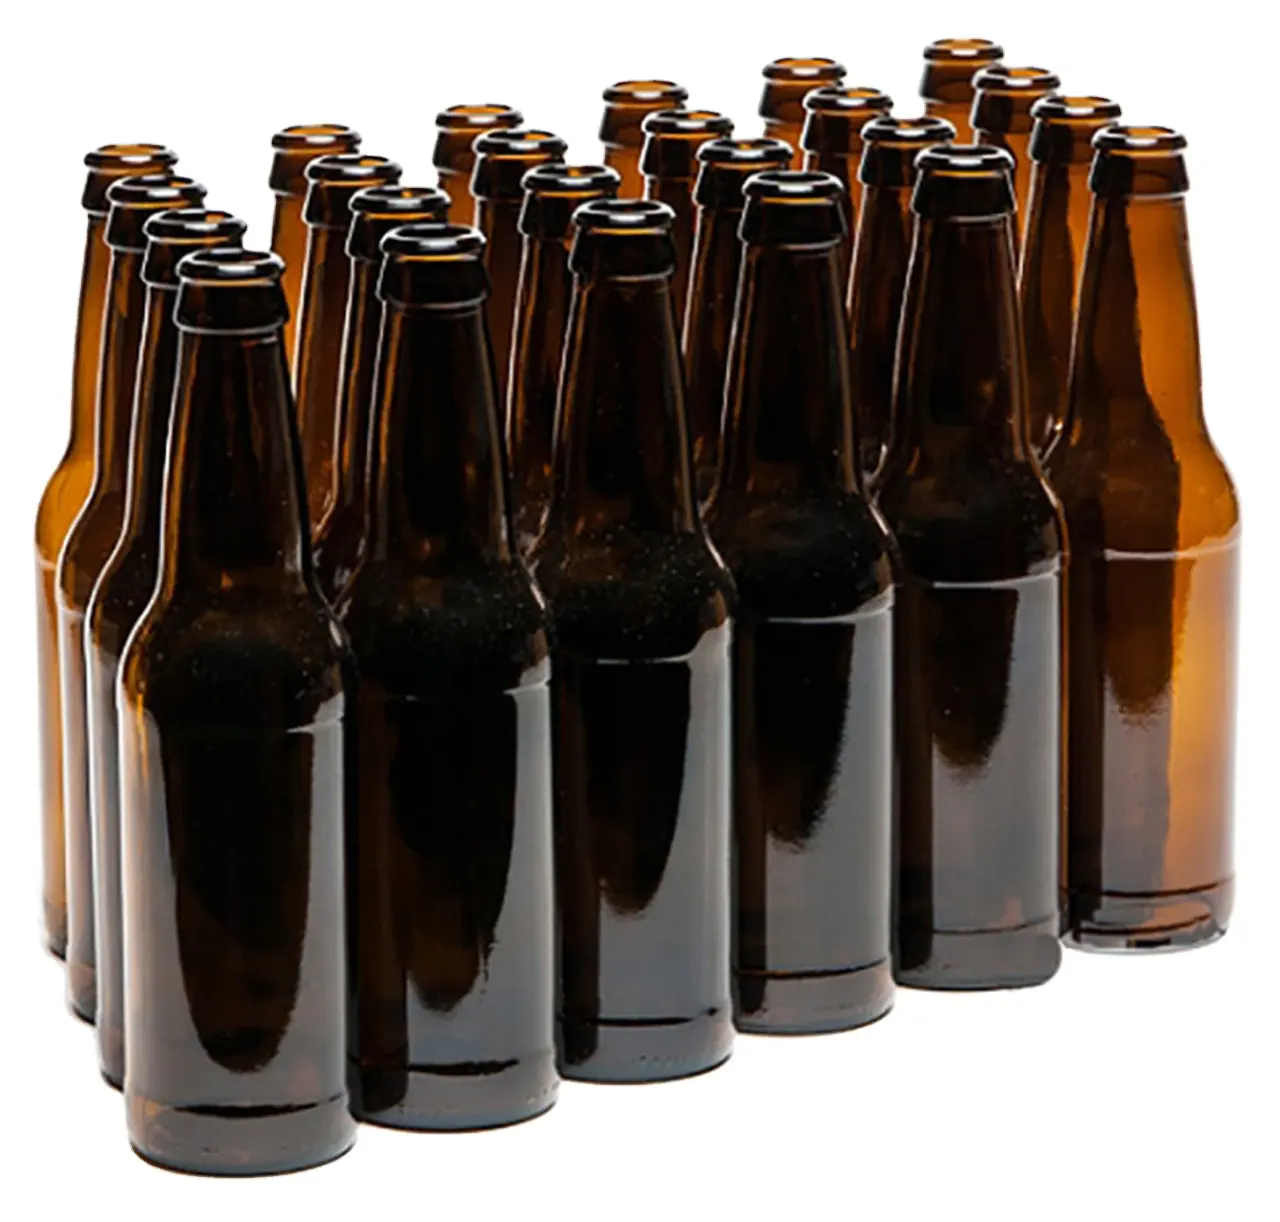 炭酸化圧力に耐える出荷の準備ができています12オンスのロングネック琥珀色のビール瓶クラウンキャップ